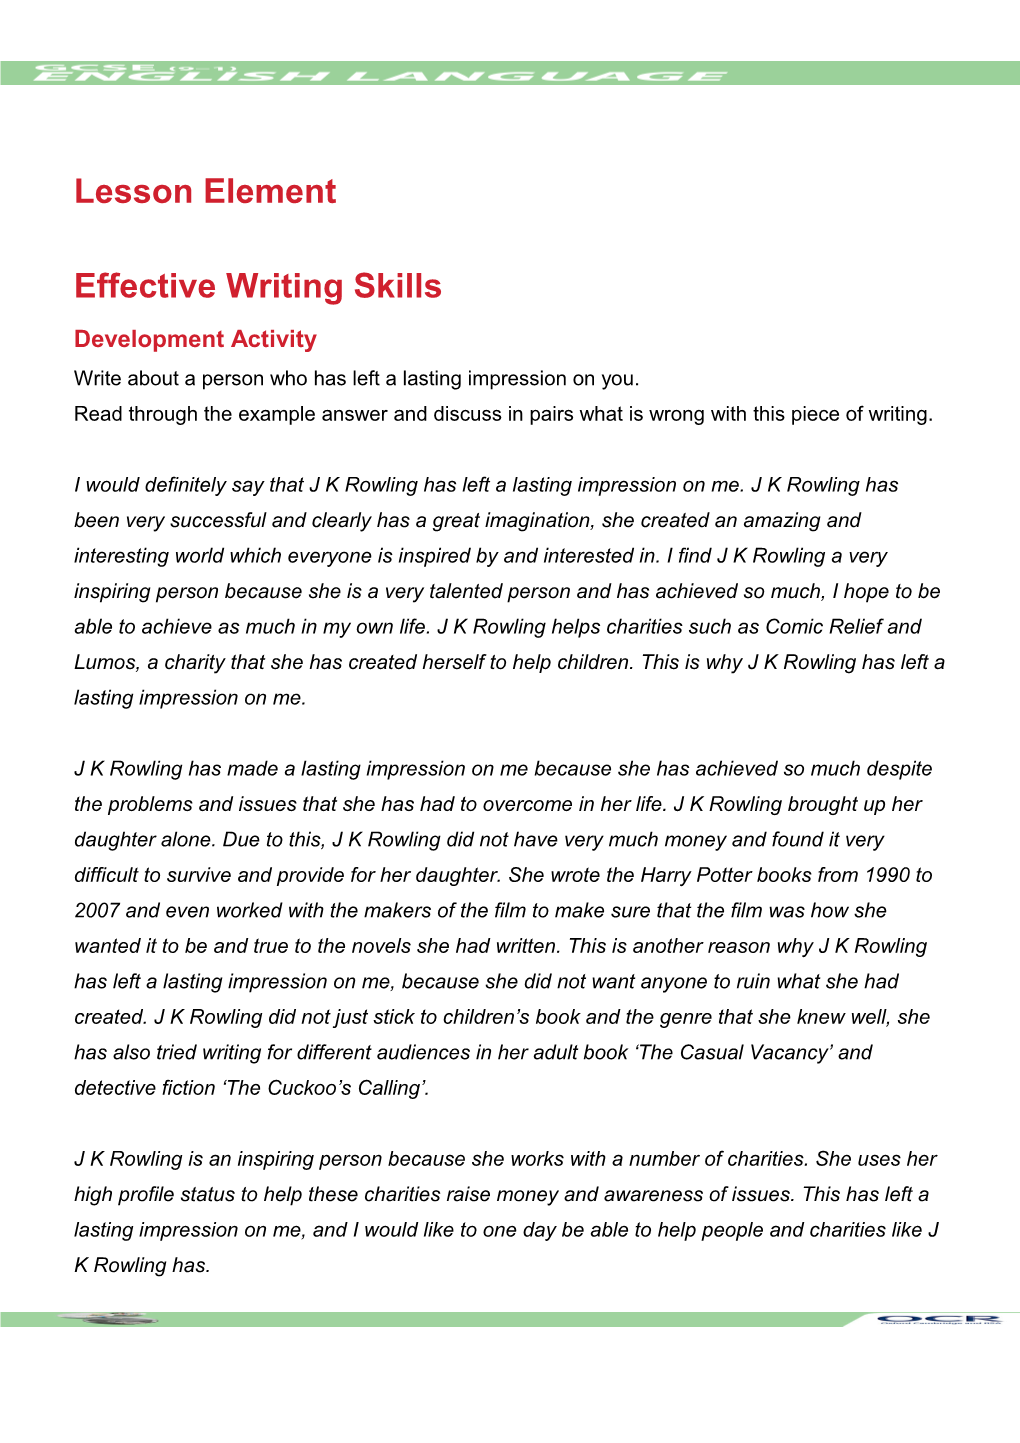 GCSE (9-1) English Language Lesson Element (Effective Writing Skills)